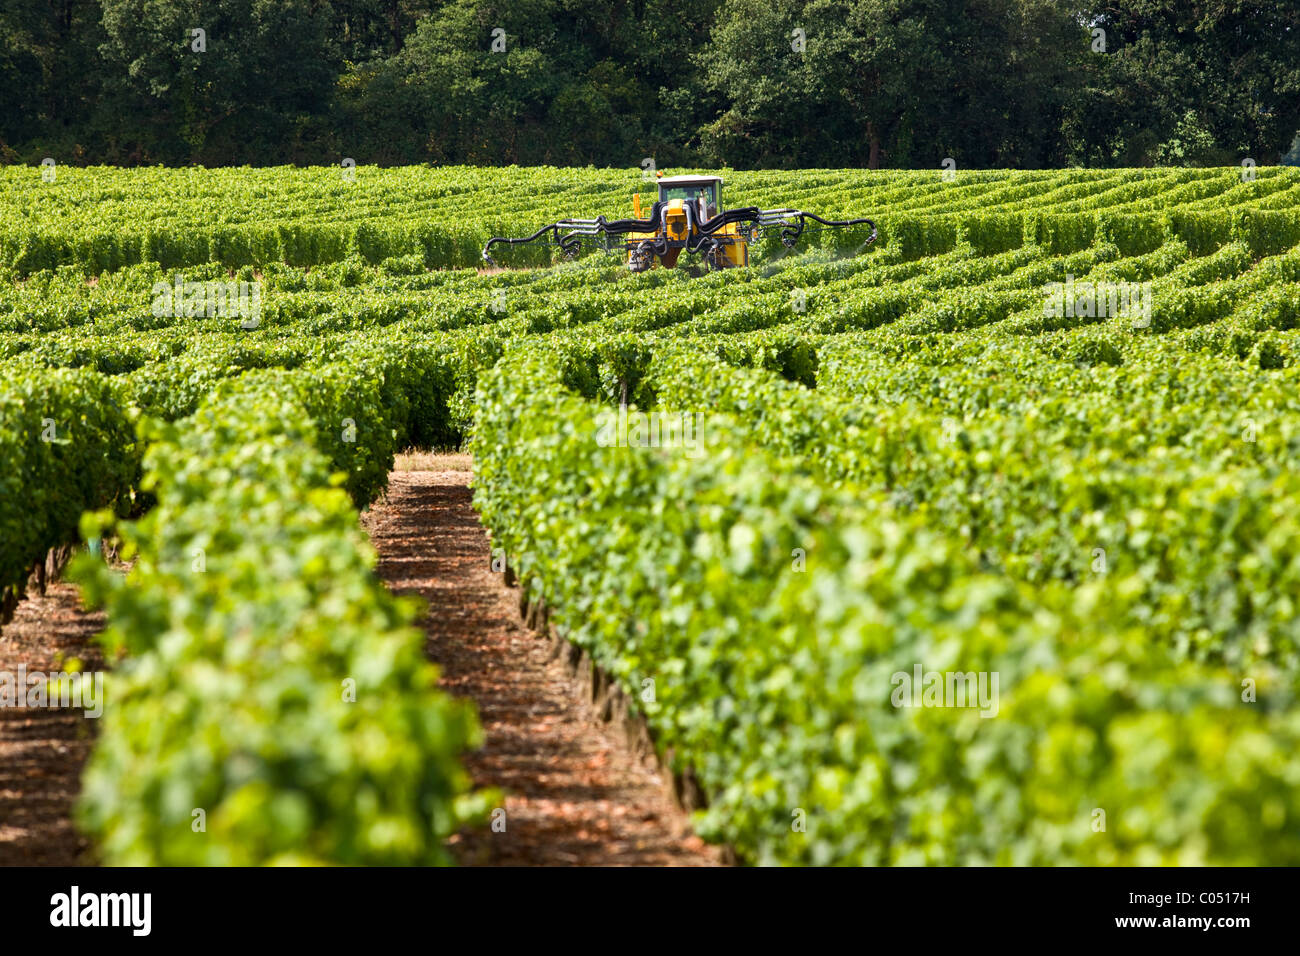 Tracteur de vigne pulvérisation des cultures de vignes dans un vignoble à Parnay, vallée de la Loire, France Banque D'Images